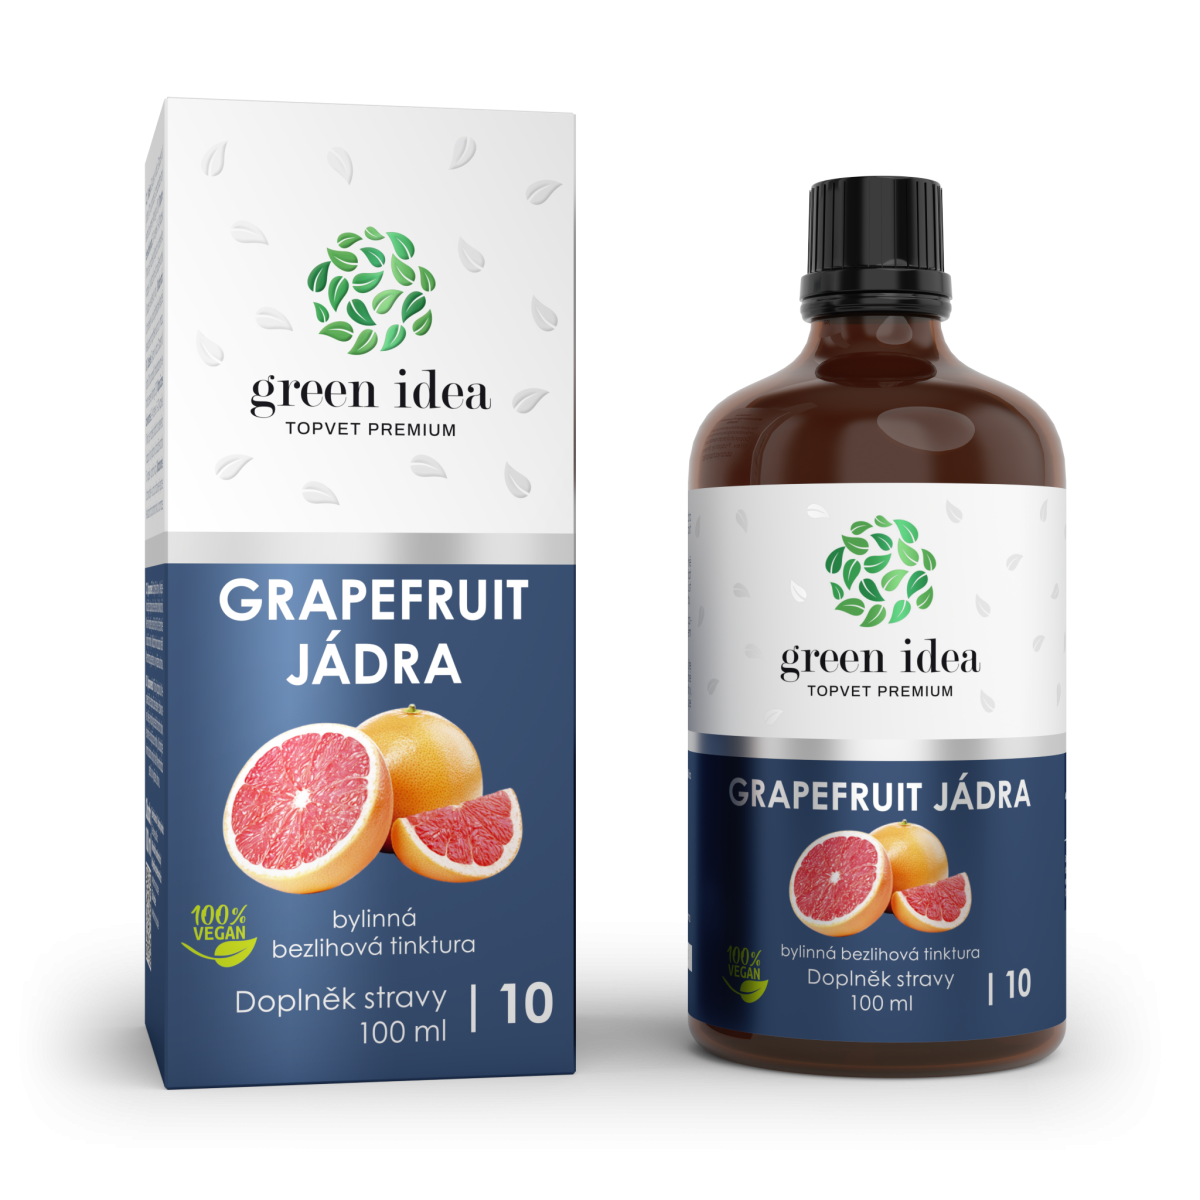 Grapefruit jádra - bezlihová tinktura na imunitu